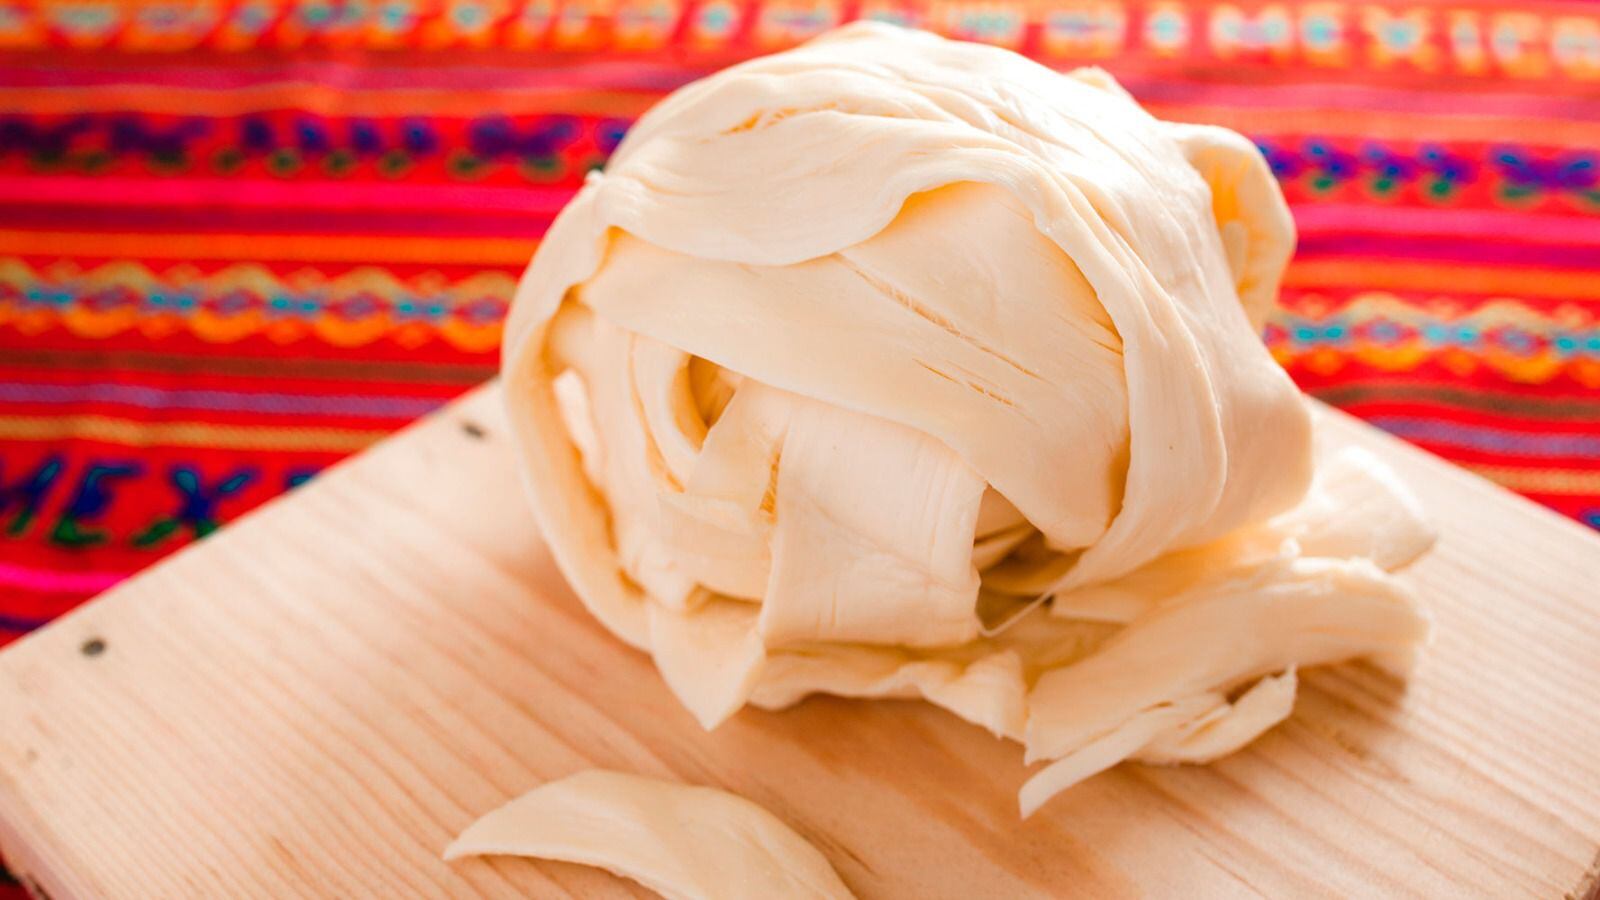 El queso Oaxaca tiene altos niveles de grasas. (Foto: Shutterstock).